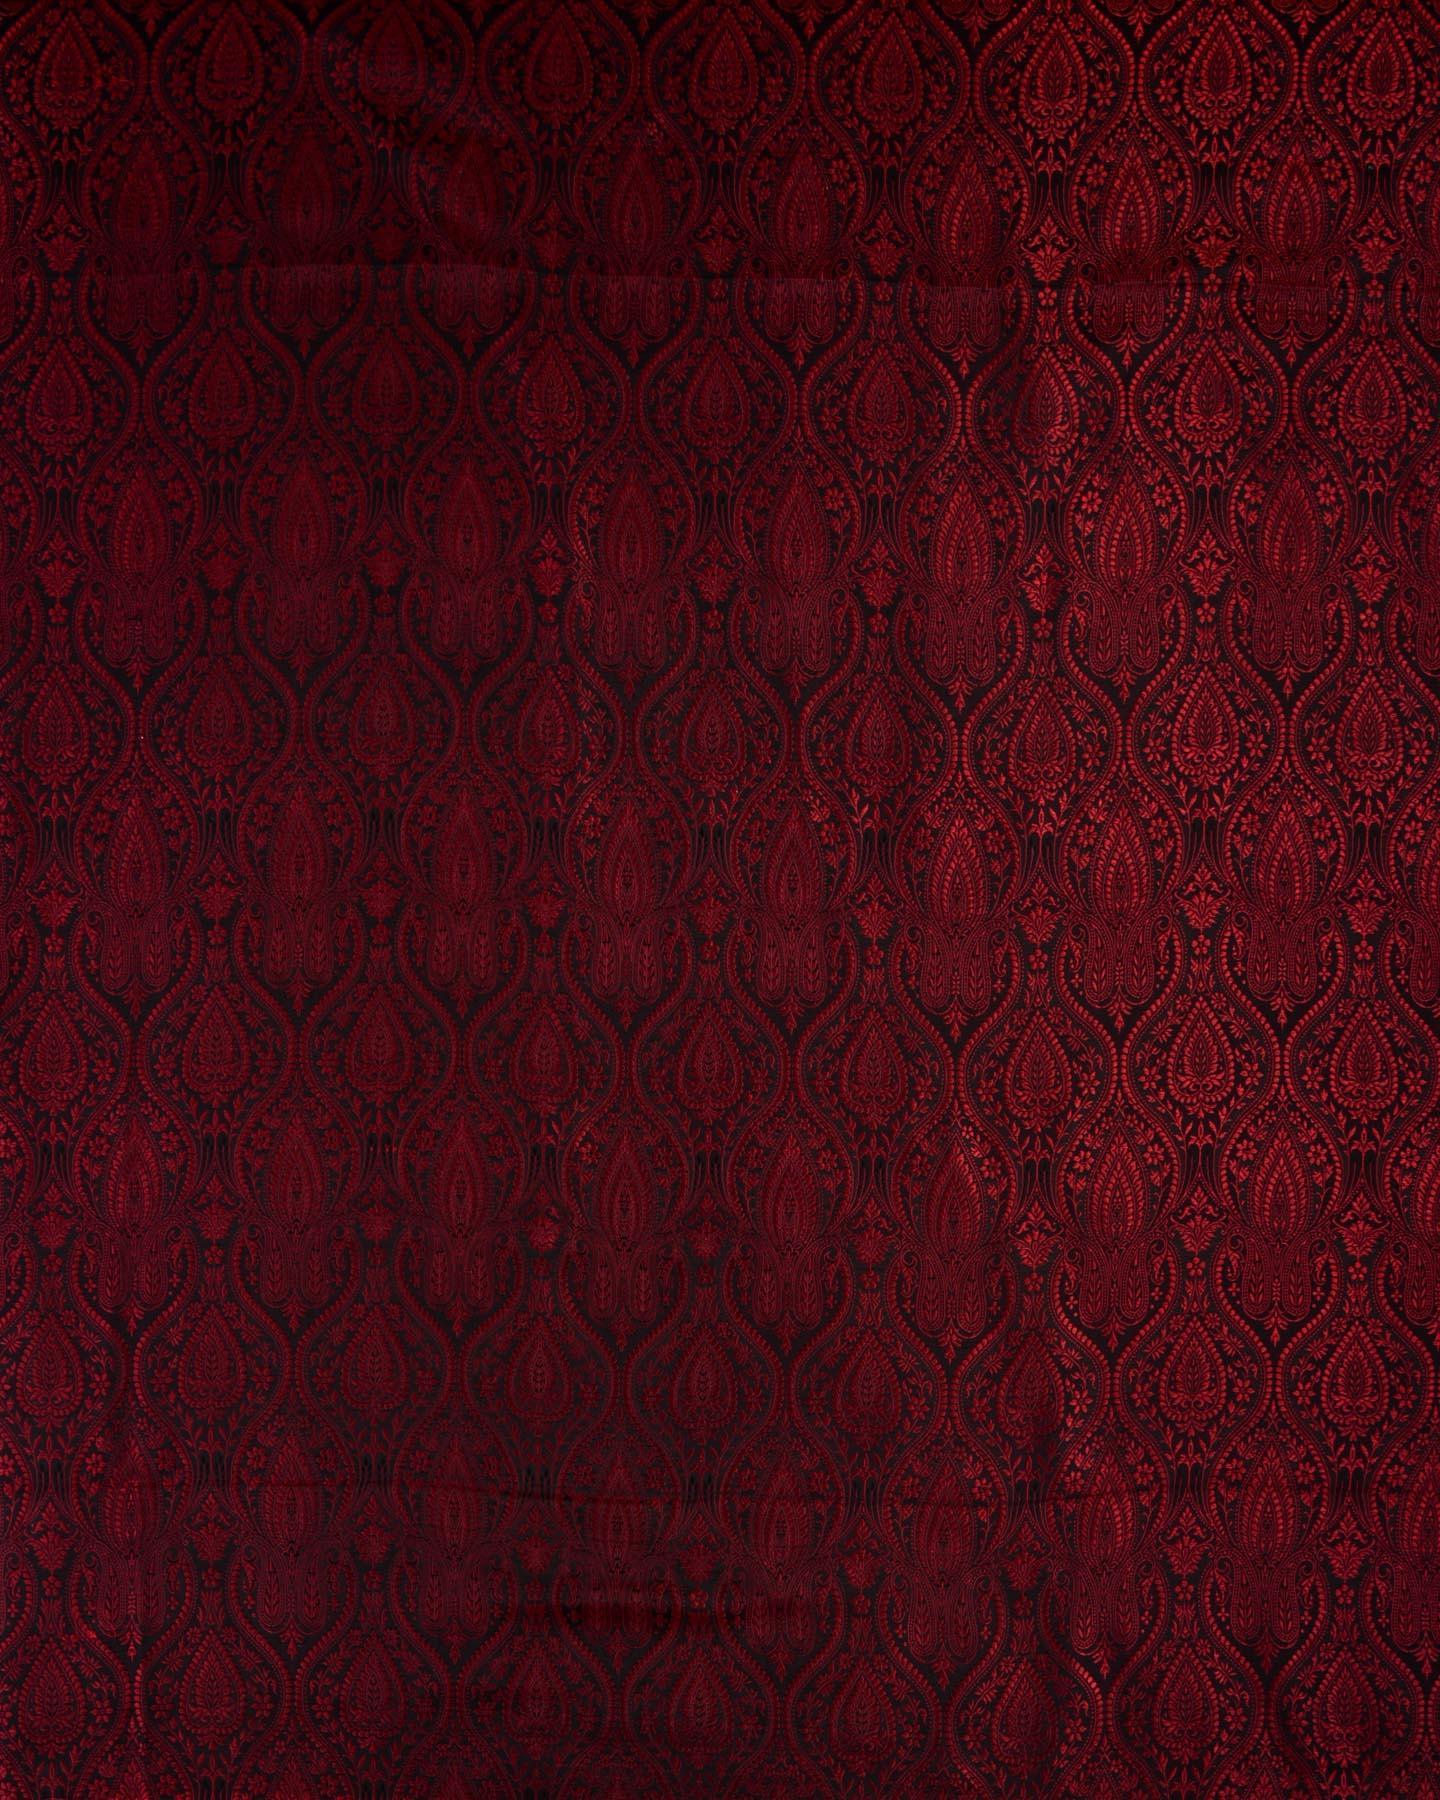 Red on Black Banarasi Tanchoi Handwoven Katan Silk Fabric - By HolyWeaves, Benares